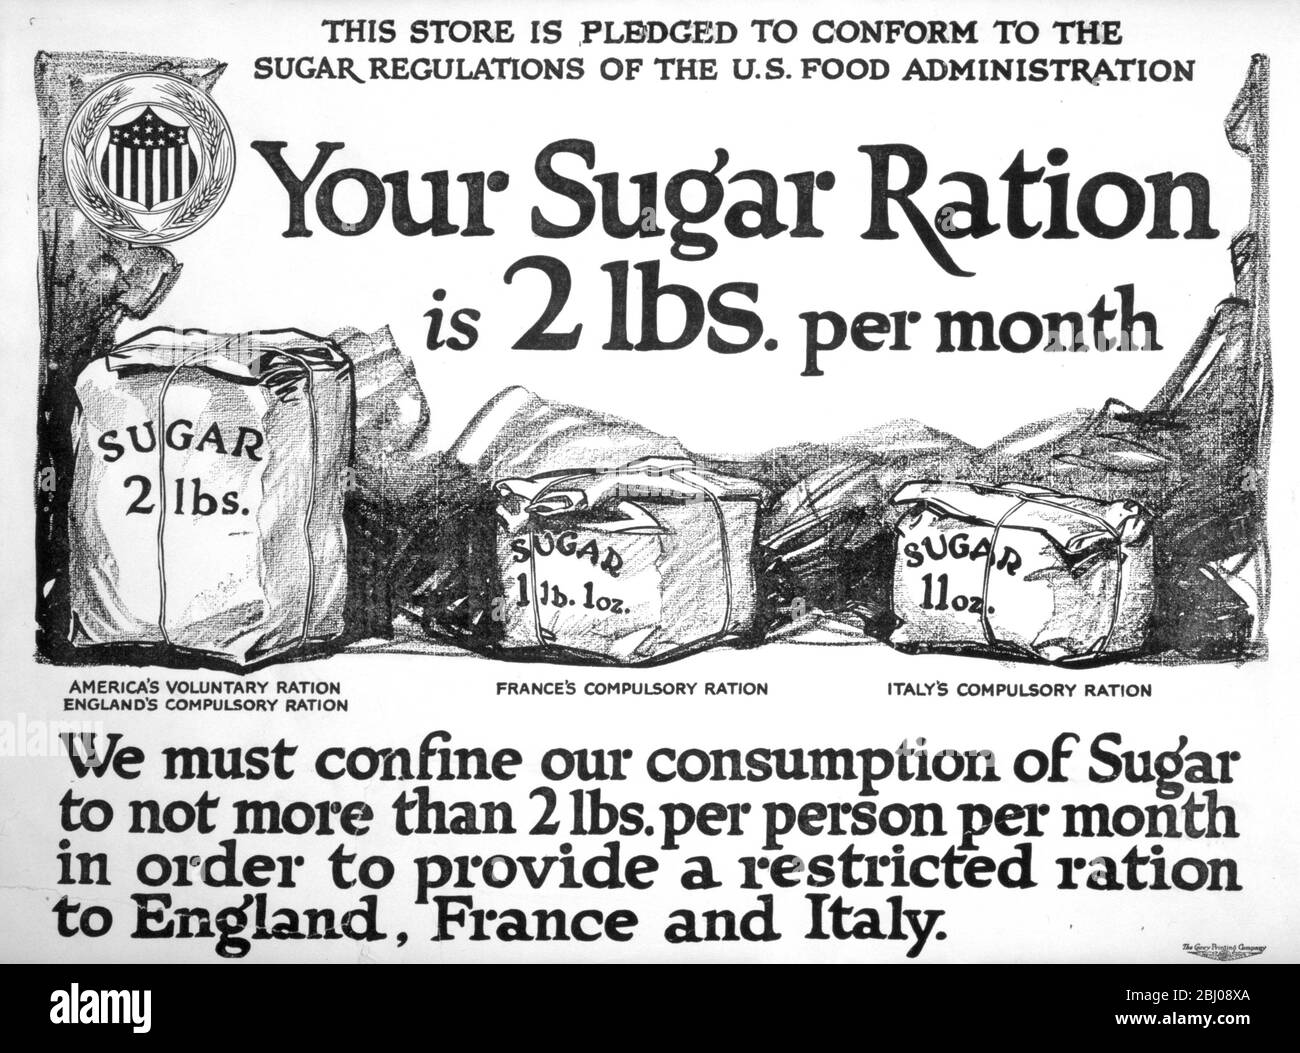 American WW1 Poster - - Ihre Zuckerration ist 2 lbs. Pro Monat - - dieser Laden ist verpflichtet, die Zucker-Vorschriften der US-amerikanischen Food Administration entsprechen. Wir müssen unseren Verbrauch von Zucker auf nicht mehr als 2 Pfund pro Person pro Monat beschränken, um eine begrenzte Ration nach England, Frankreich und Italien zu bieten. - - Die Carey Printing Company, New York. 1917 Stockfoto